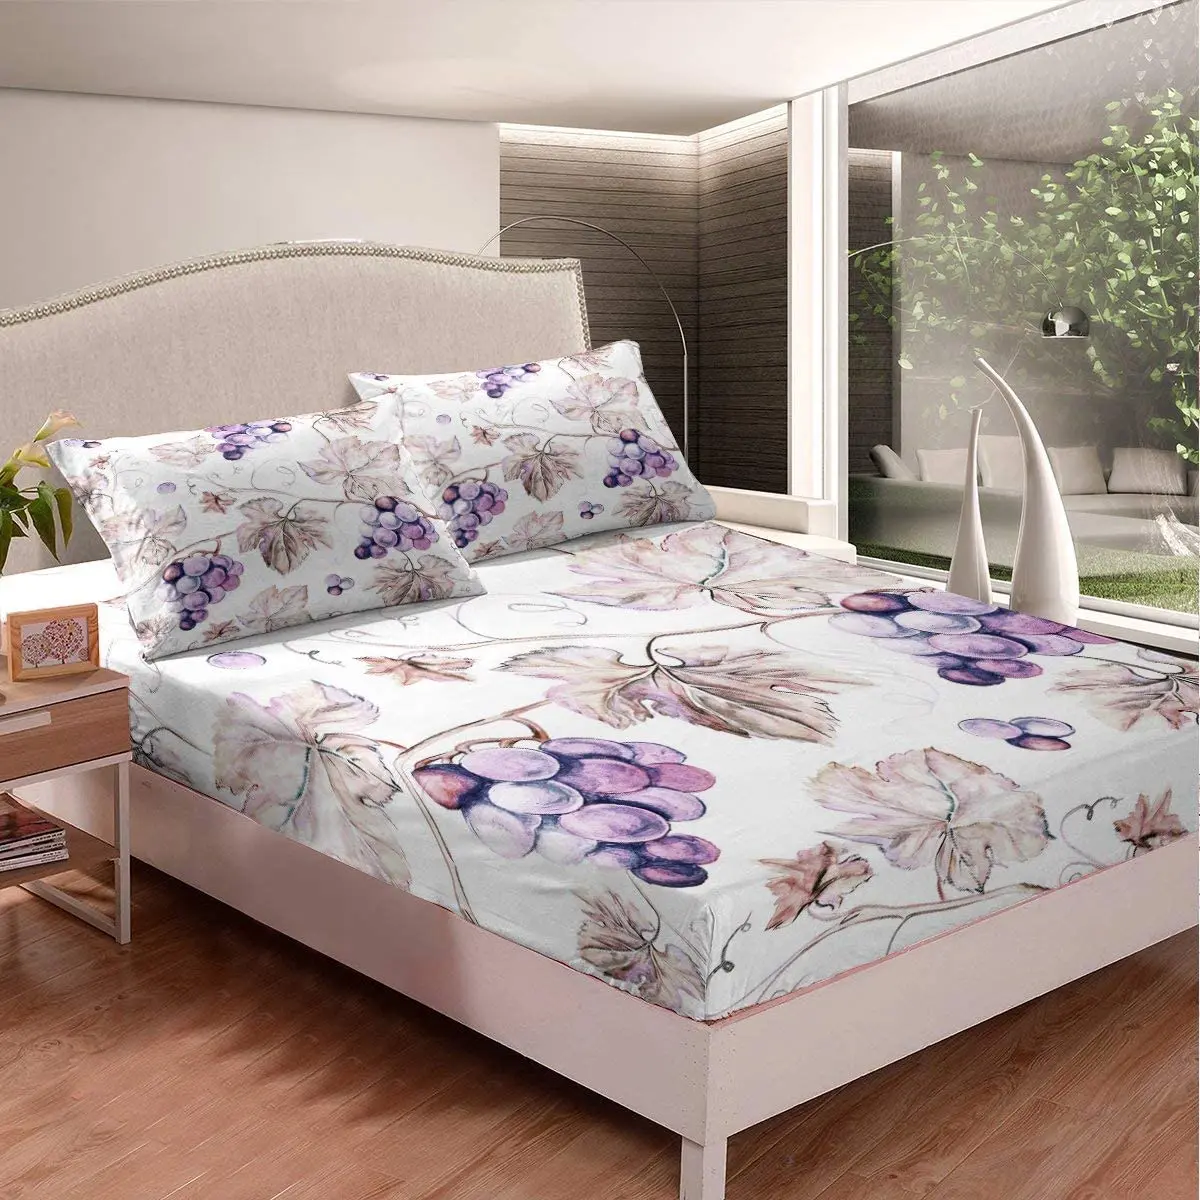 

Комплект постельного белья из полиэстера для мальчиков и девочек, с изображением винограда, ветвей, листьев, свежих фруктов